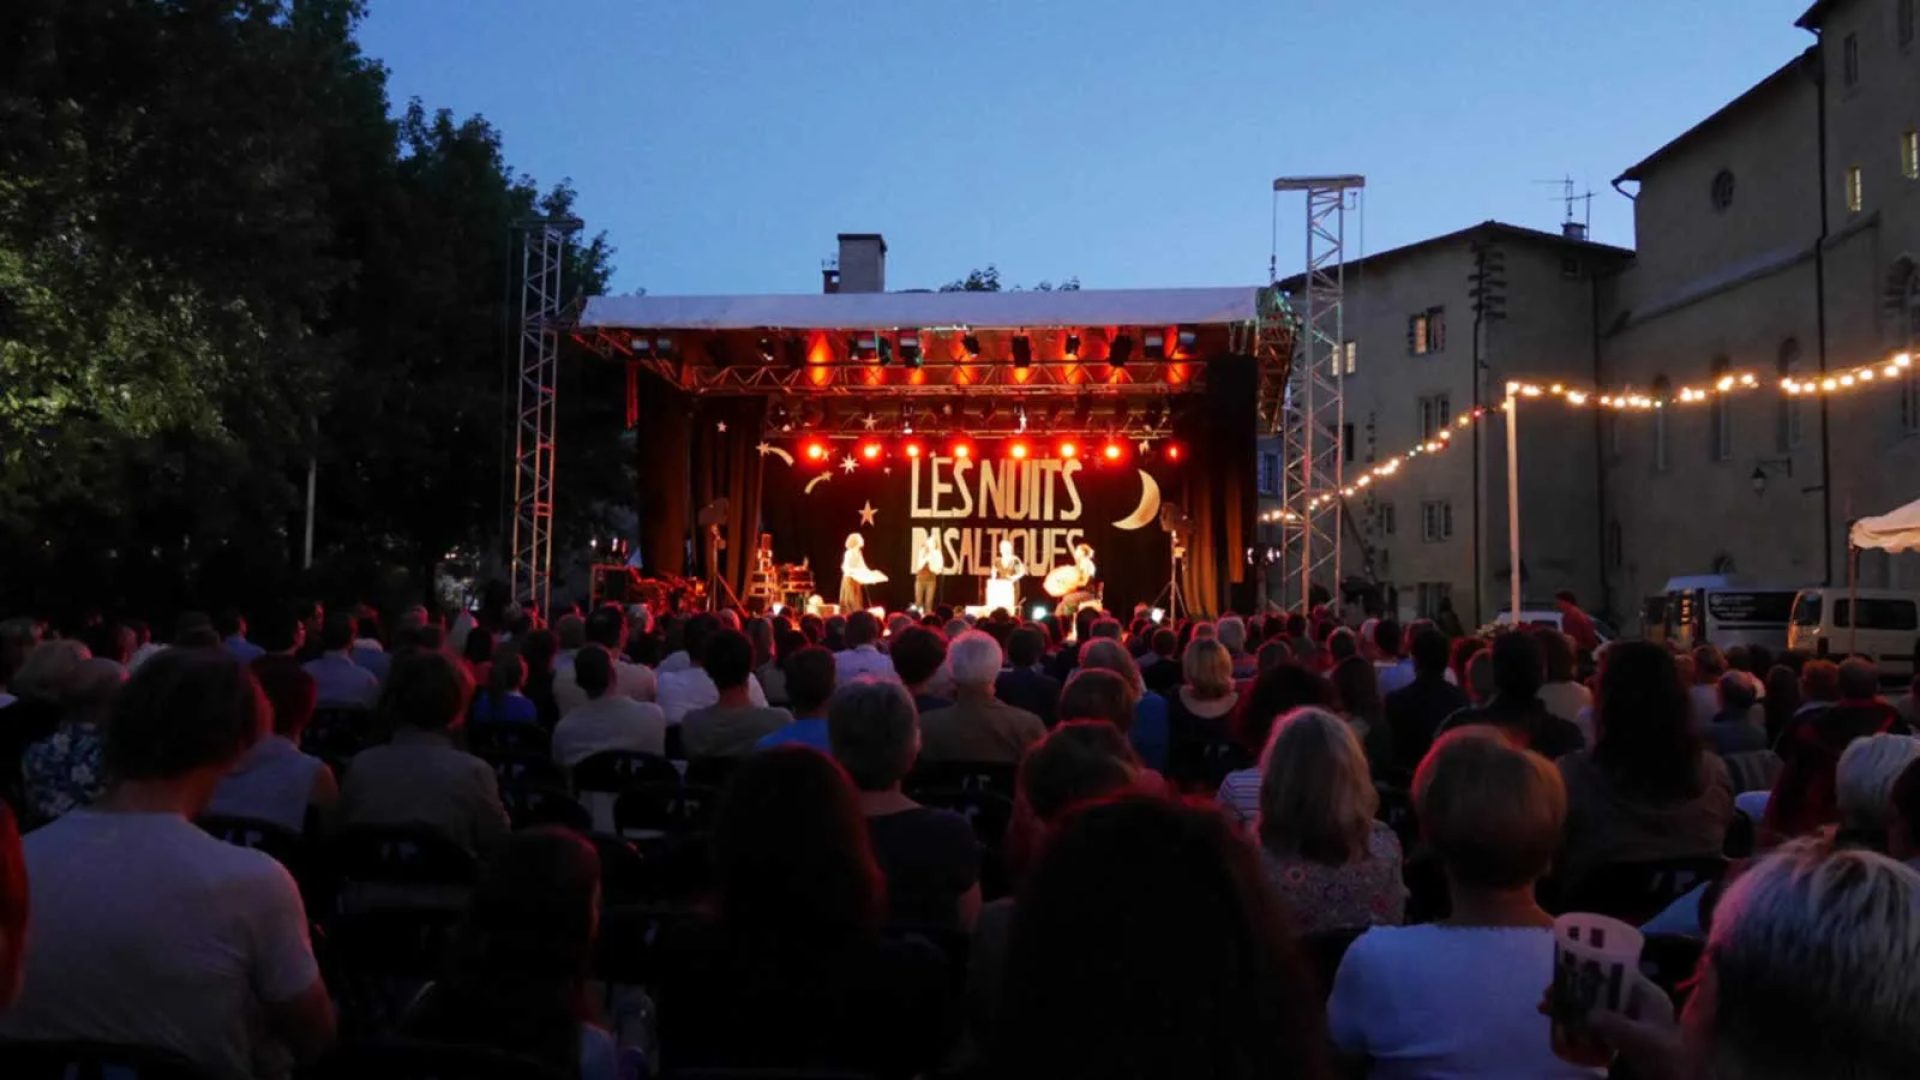 La foule observe un spectacle sur la scène extérieure du festival Les Nuits basaltiques en Haute-Loire, Auvergne